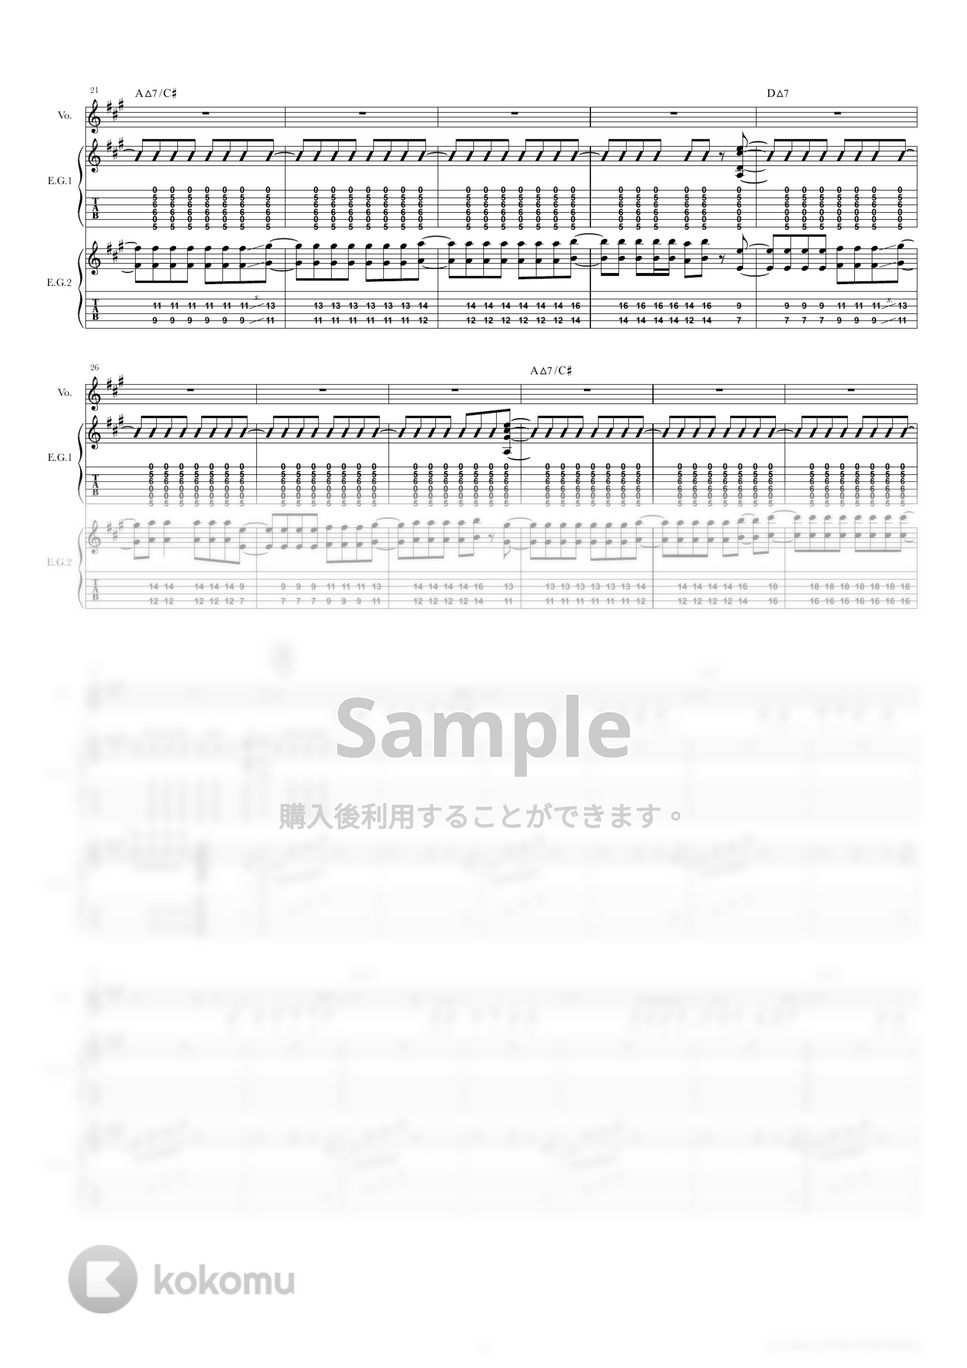 きのこ帝国 - 国道スロープ (ギタースコア・歌詞・コード付き) by TRIAD GUITAR SCHOOL